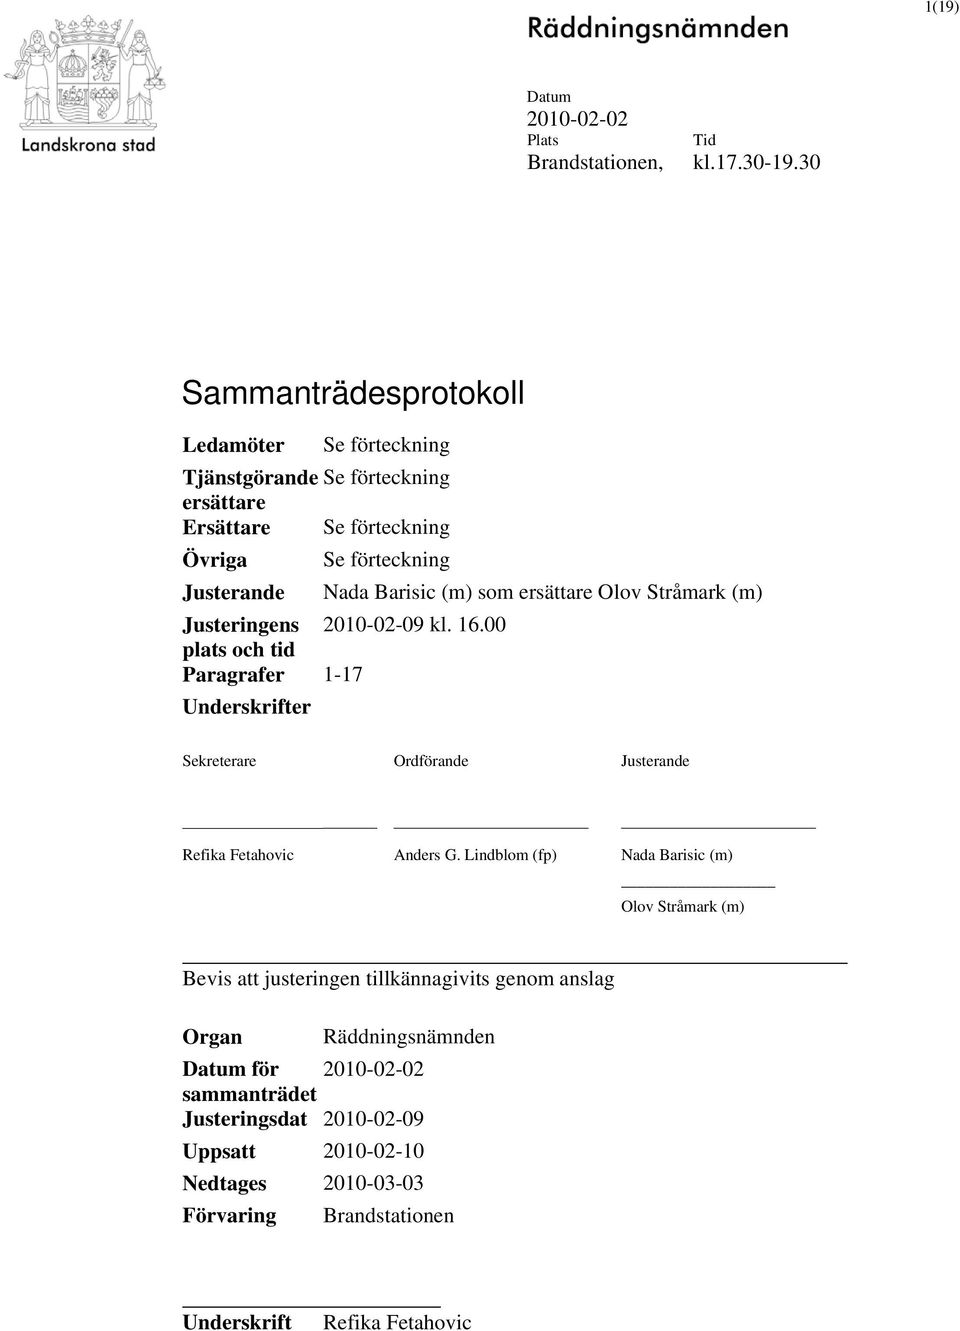 (m) som ersättare Olov Stråmark (m) Justeringens 2010-02-09 kl. 16.